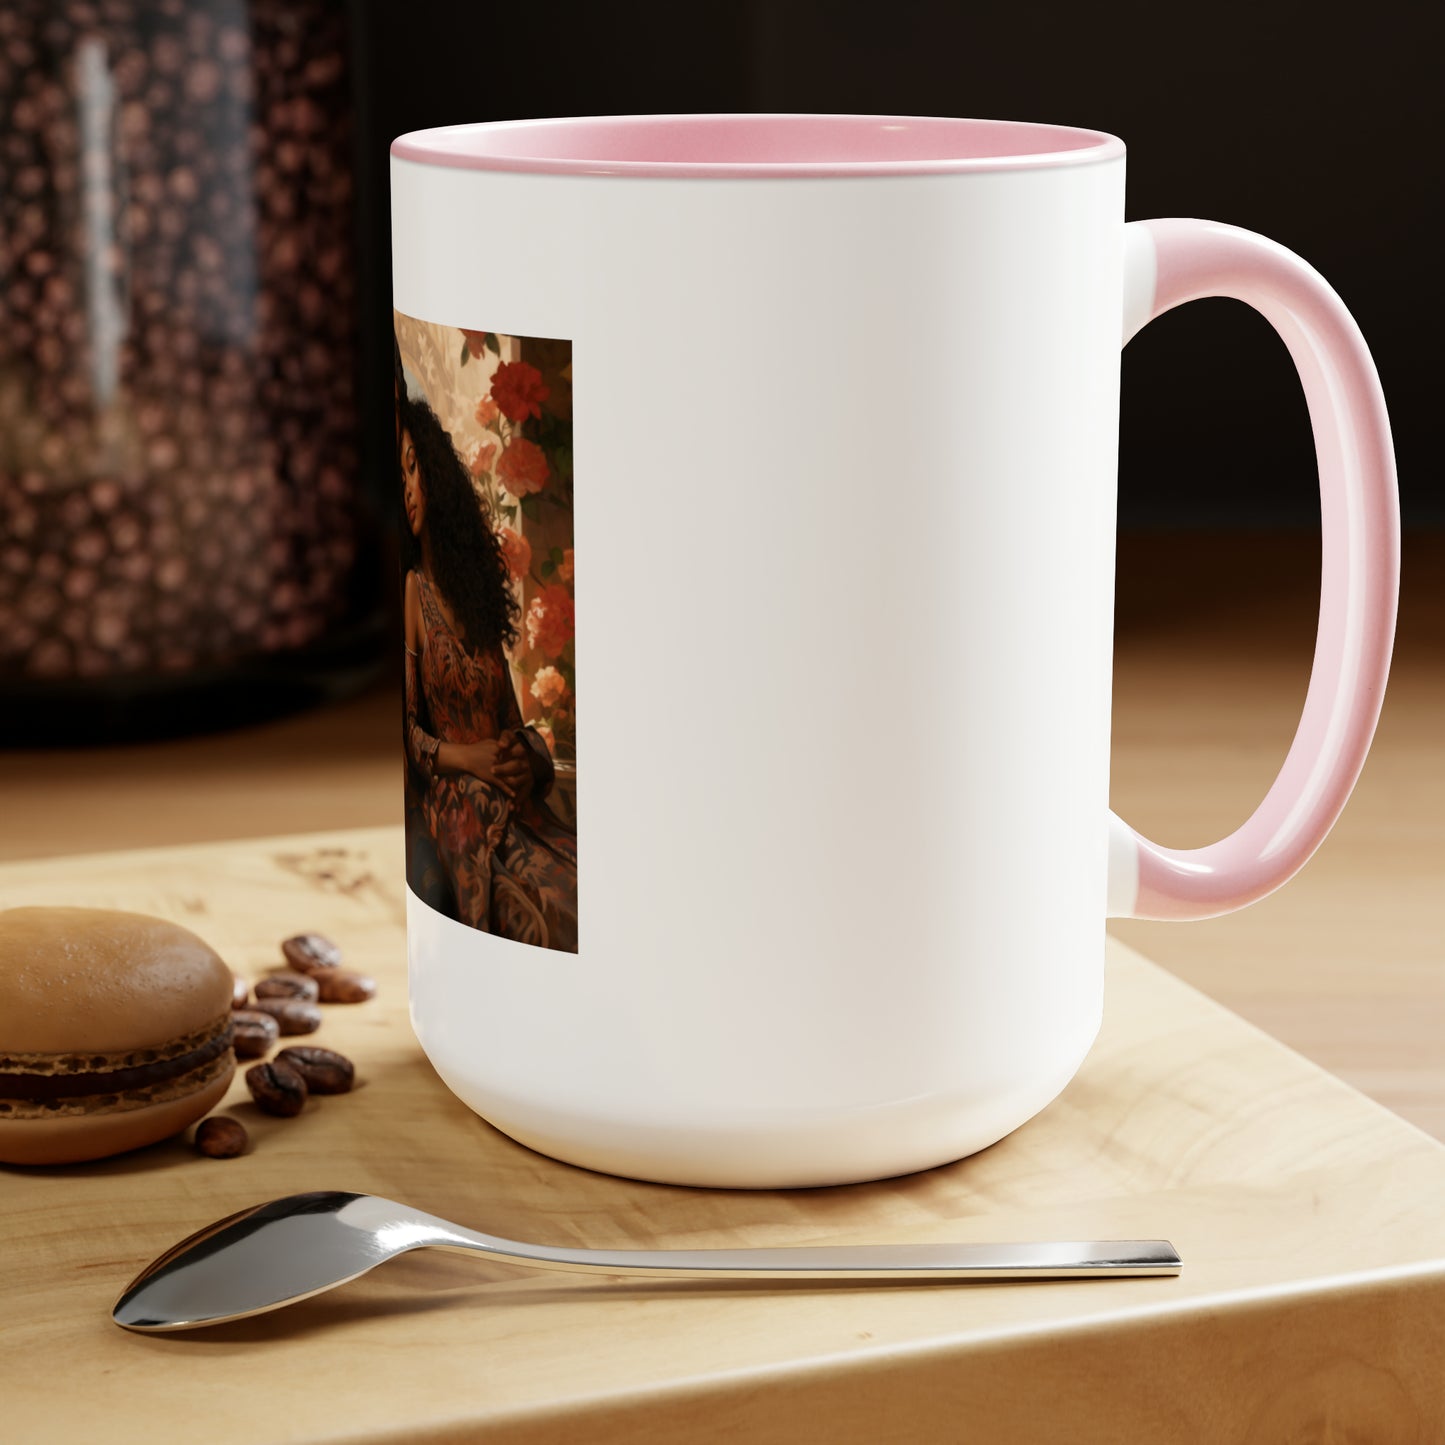 Dragon Tales Two-Tone Coffee Mugs, 15oz